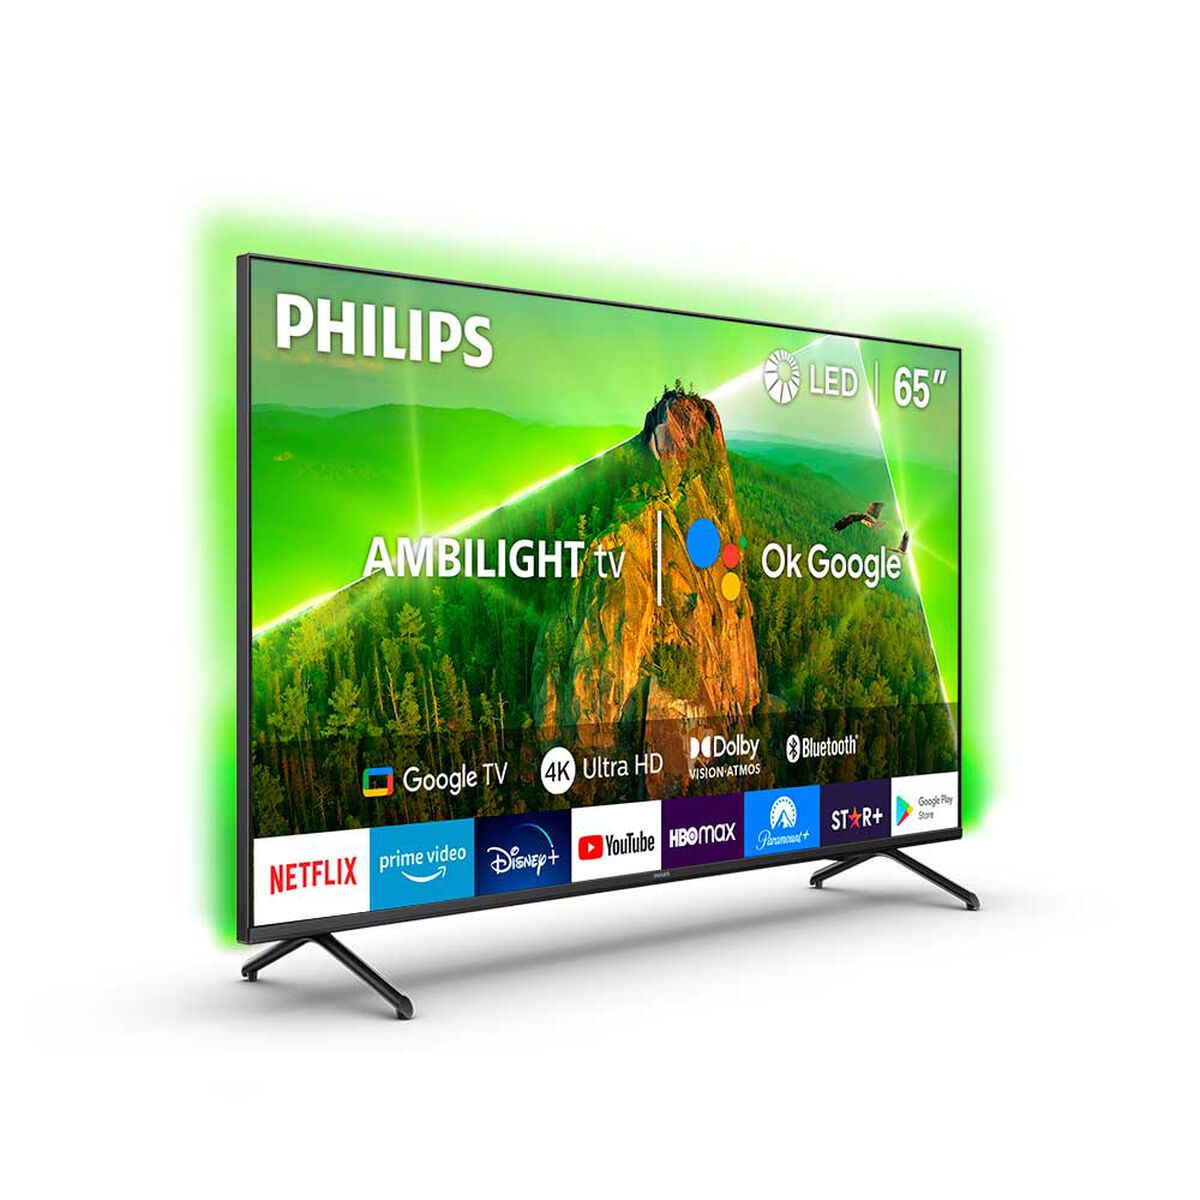 LED 65" Philips Ambilight 65PUD7908 Smart TV 4K UHD